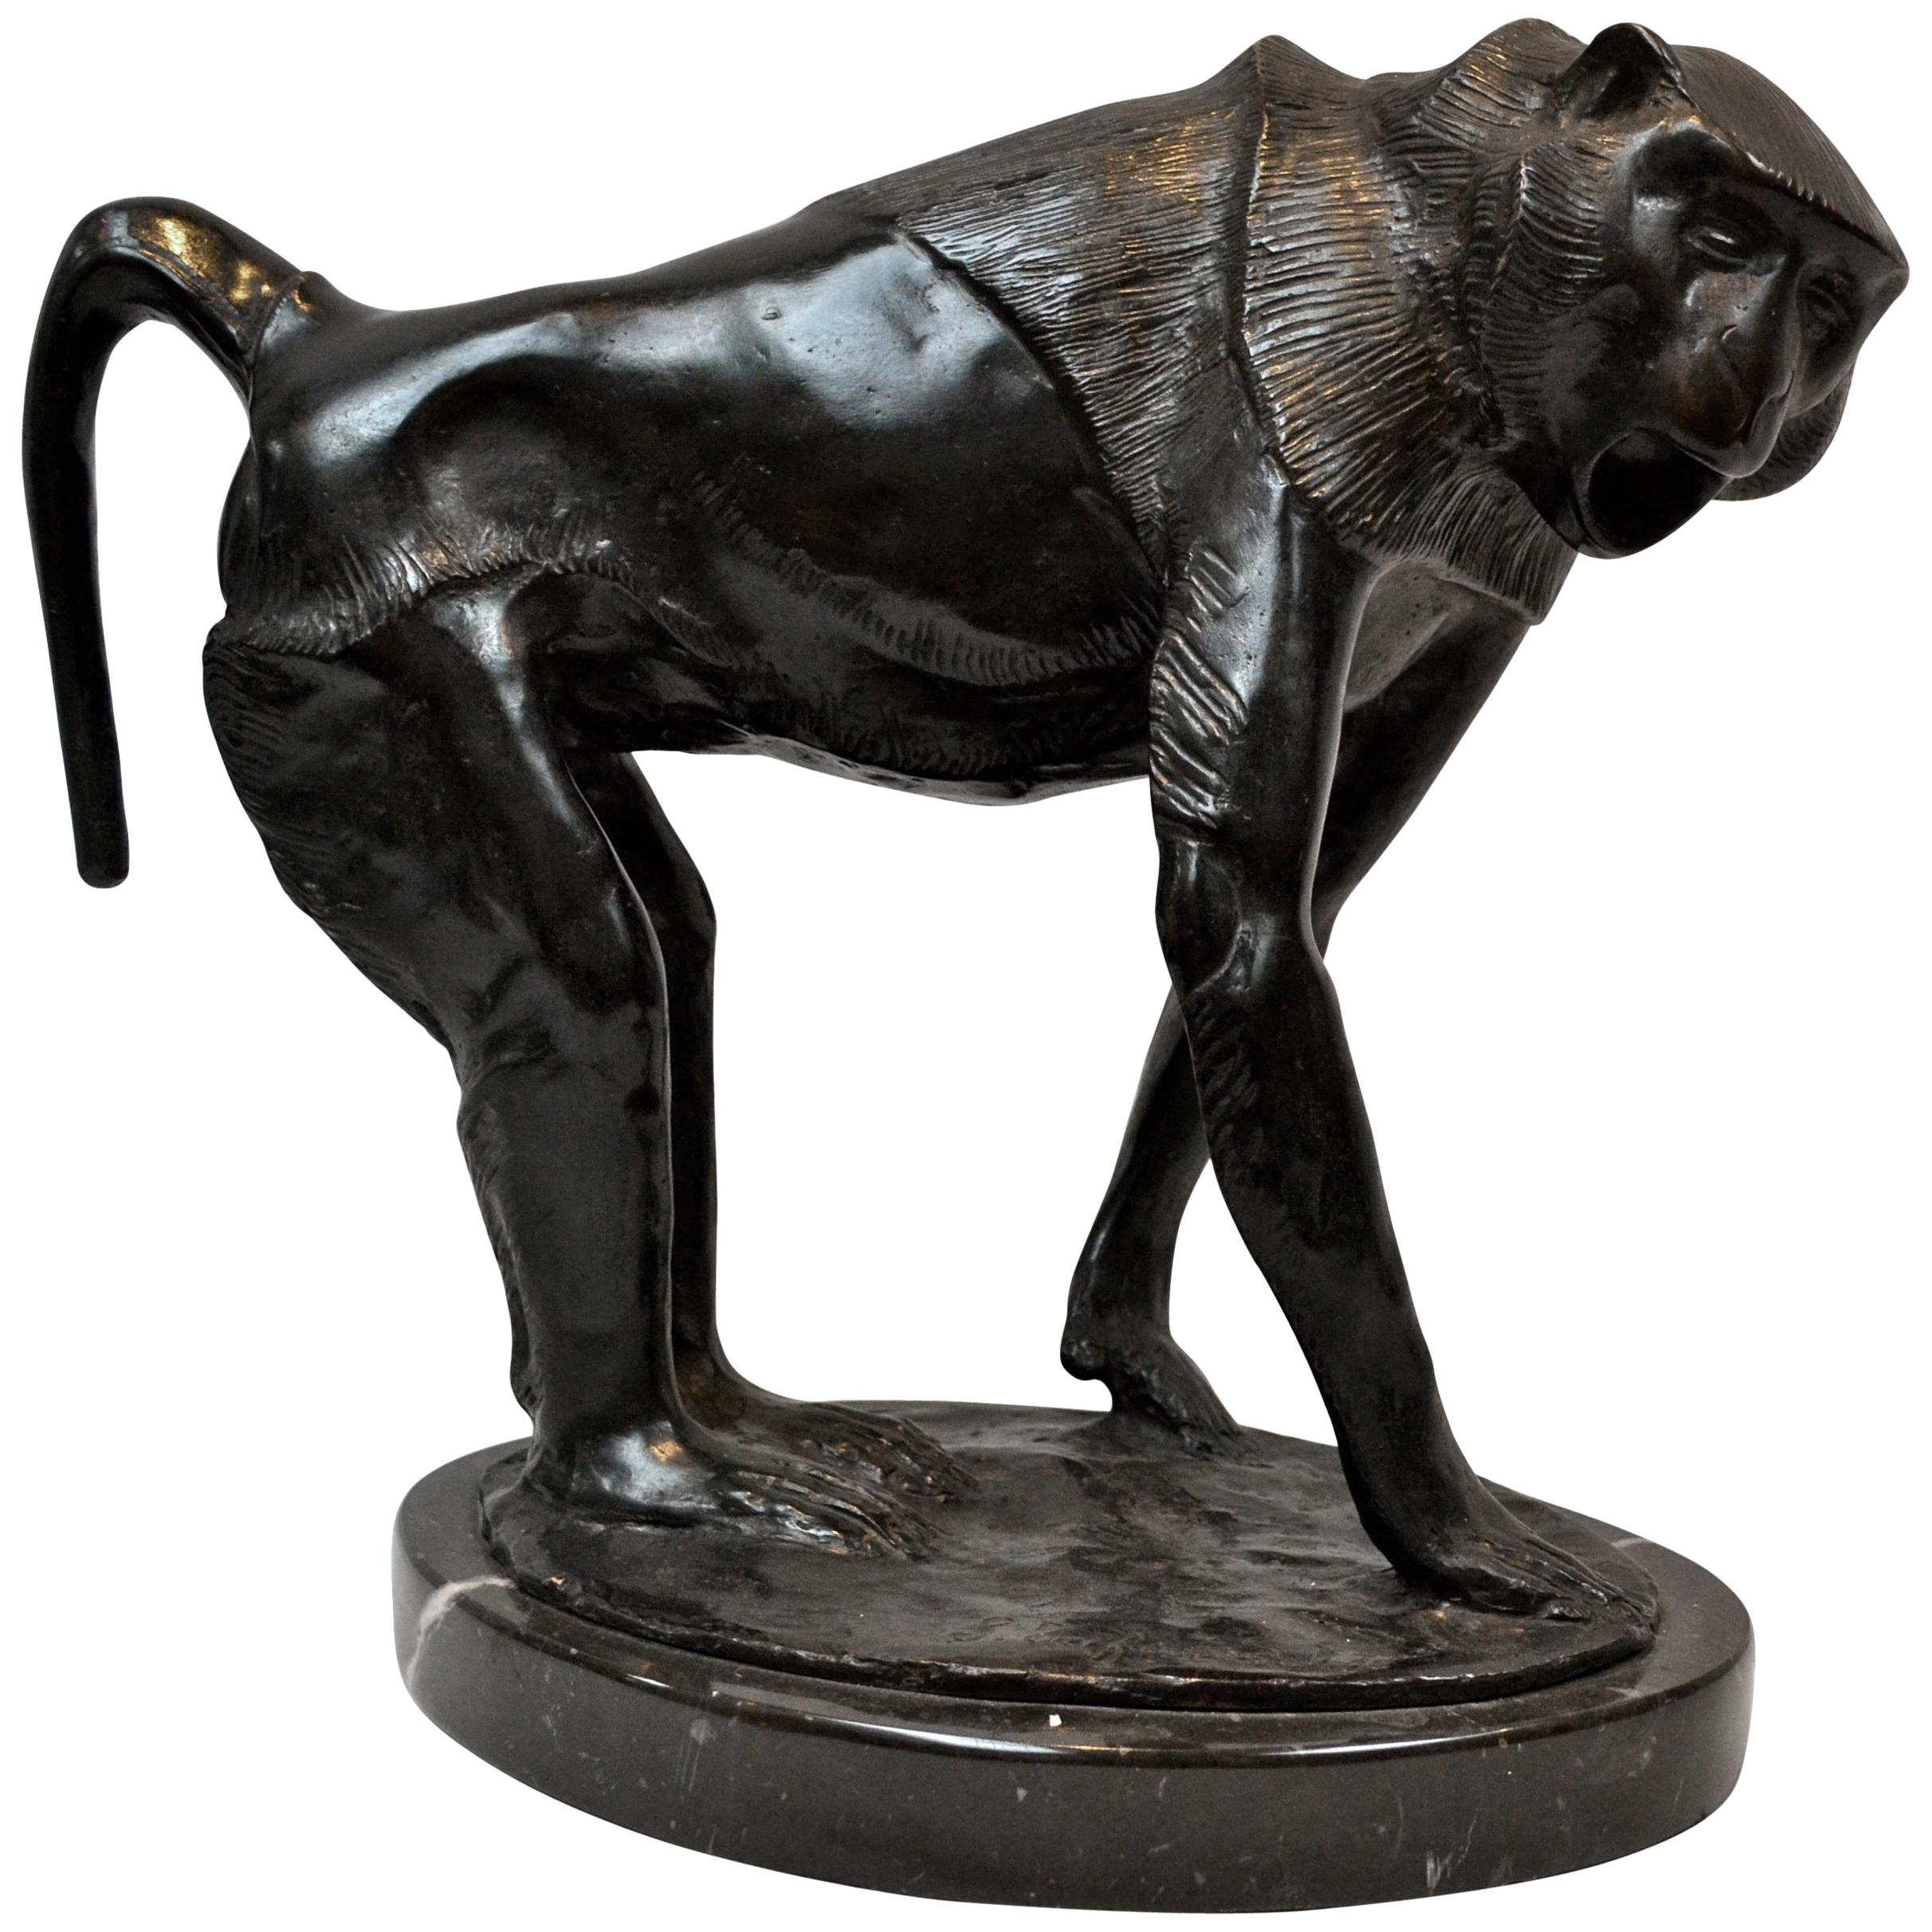  A Rare Bronze of  a Baboon by Sirio Tofanari